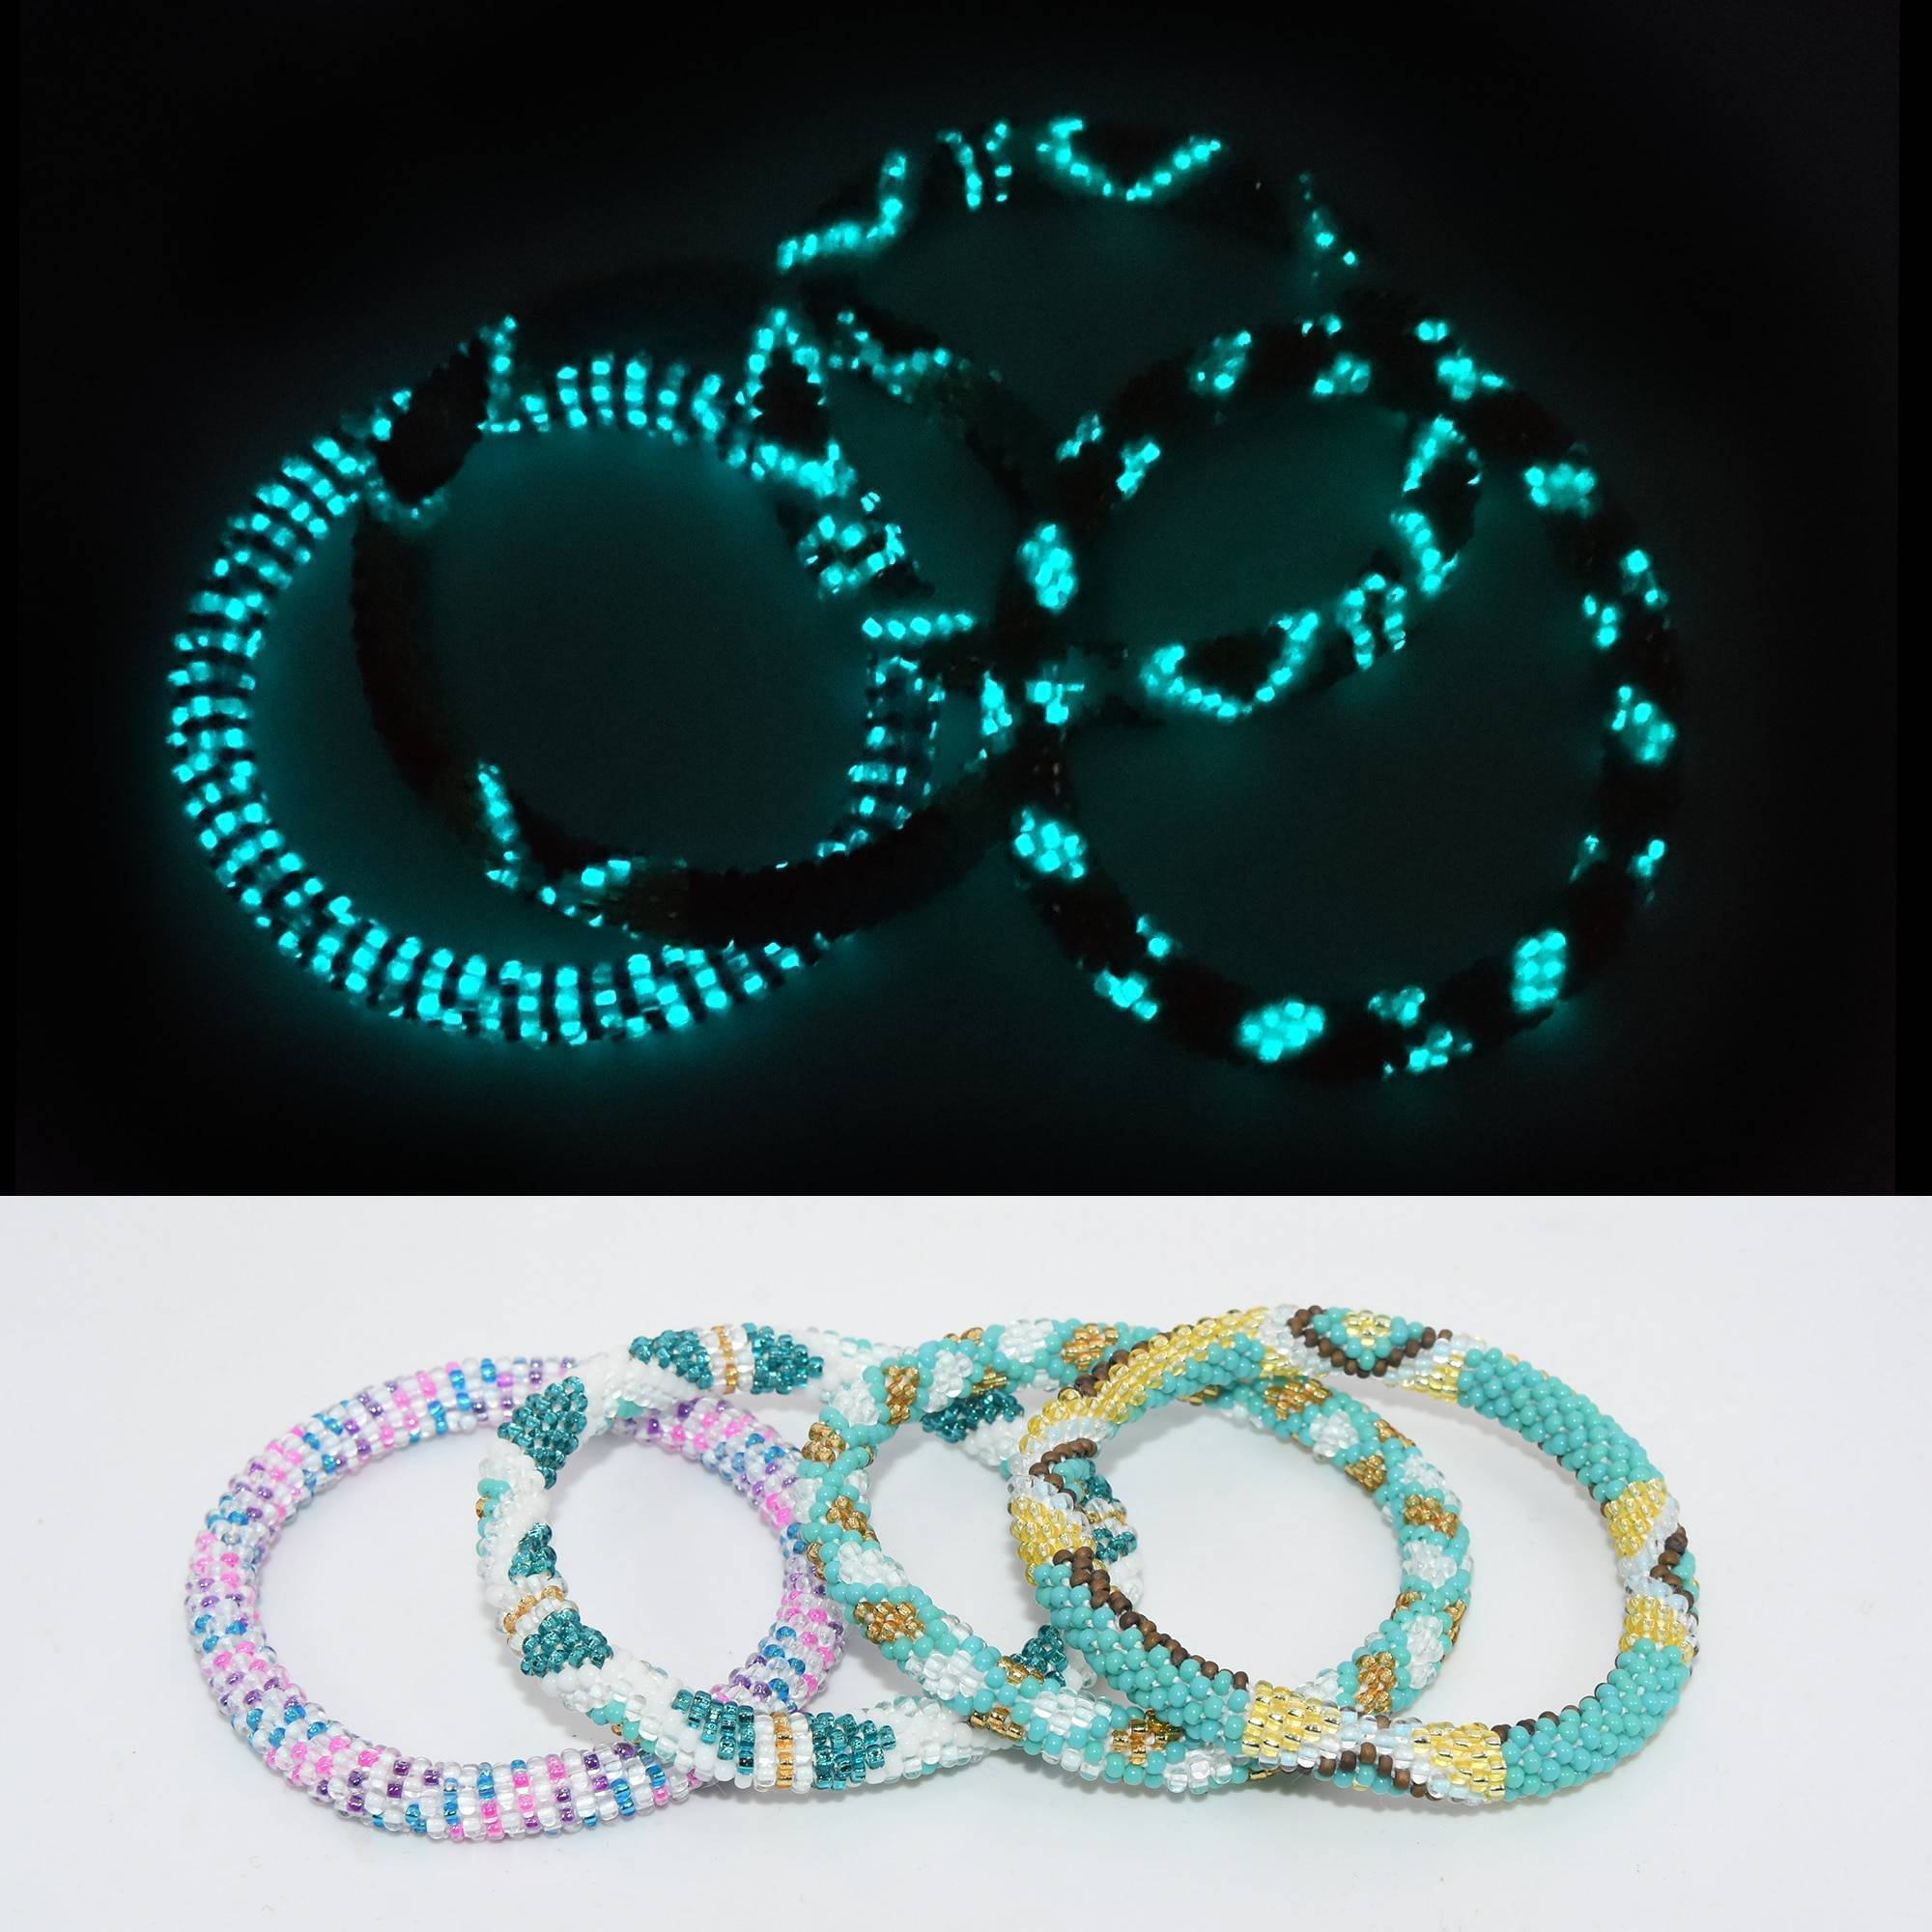 Limited Edition Firefly Bracelets - Set of 4 Bracelets